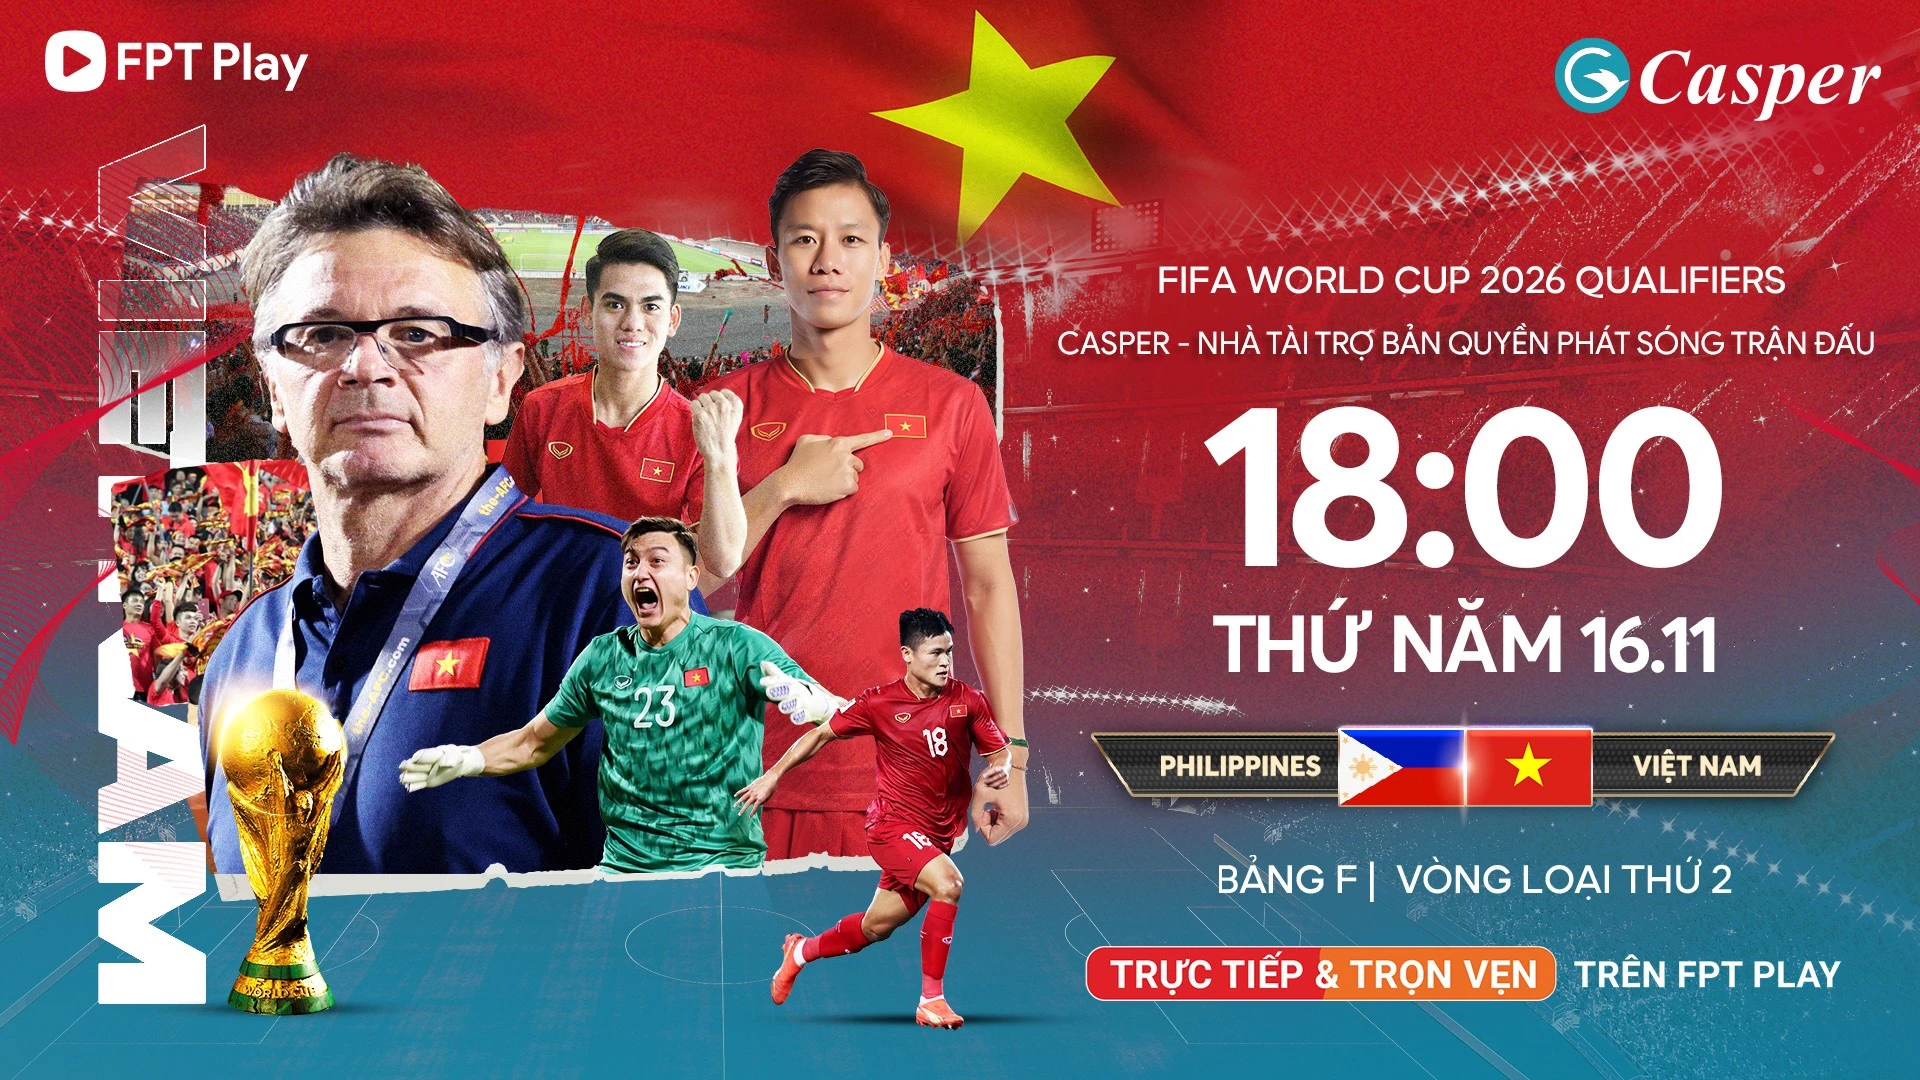  Vòng loại World Cup 2026: Xem đội tuyển Việt Nam đấu Philippines khi nào, ở đâu? - Ảnh 1.